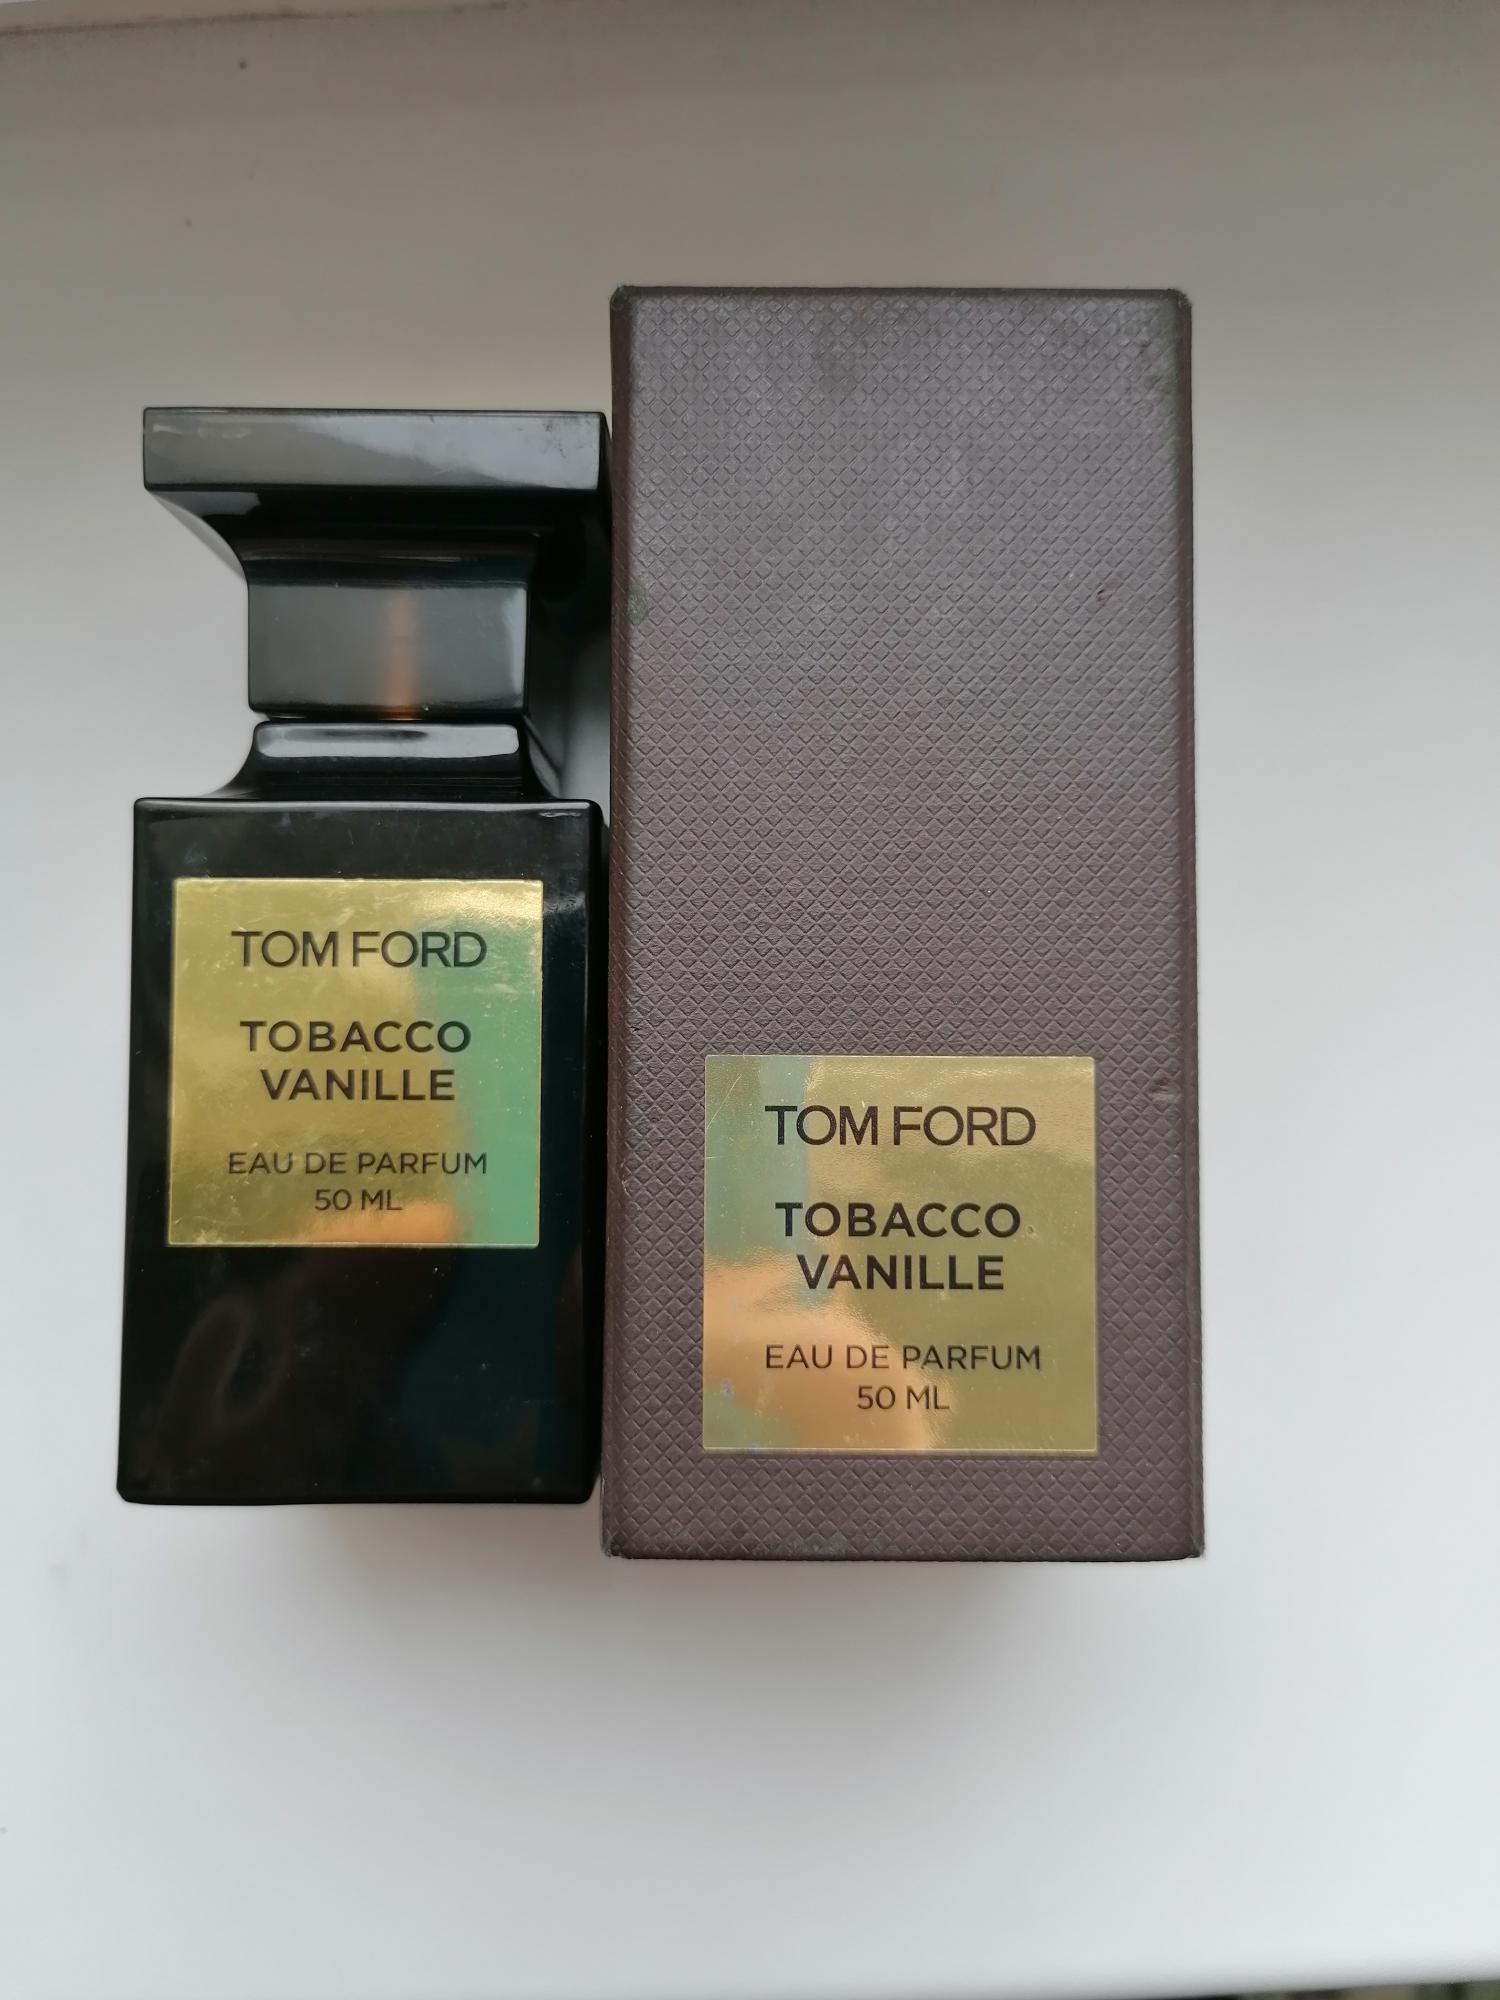 Том форд табако купить. Tom Ford Tobacco Vanille 50ml. Tobacco Vanille Tom Ford 50. Том Форд табако ваниль 25 мл. Том Форд табако ваниль оригинал.